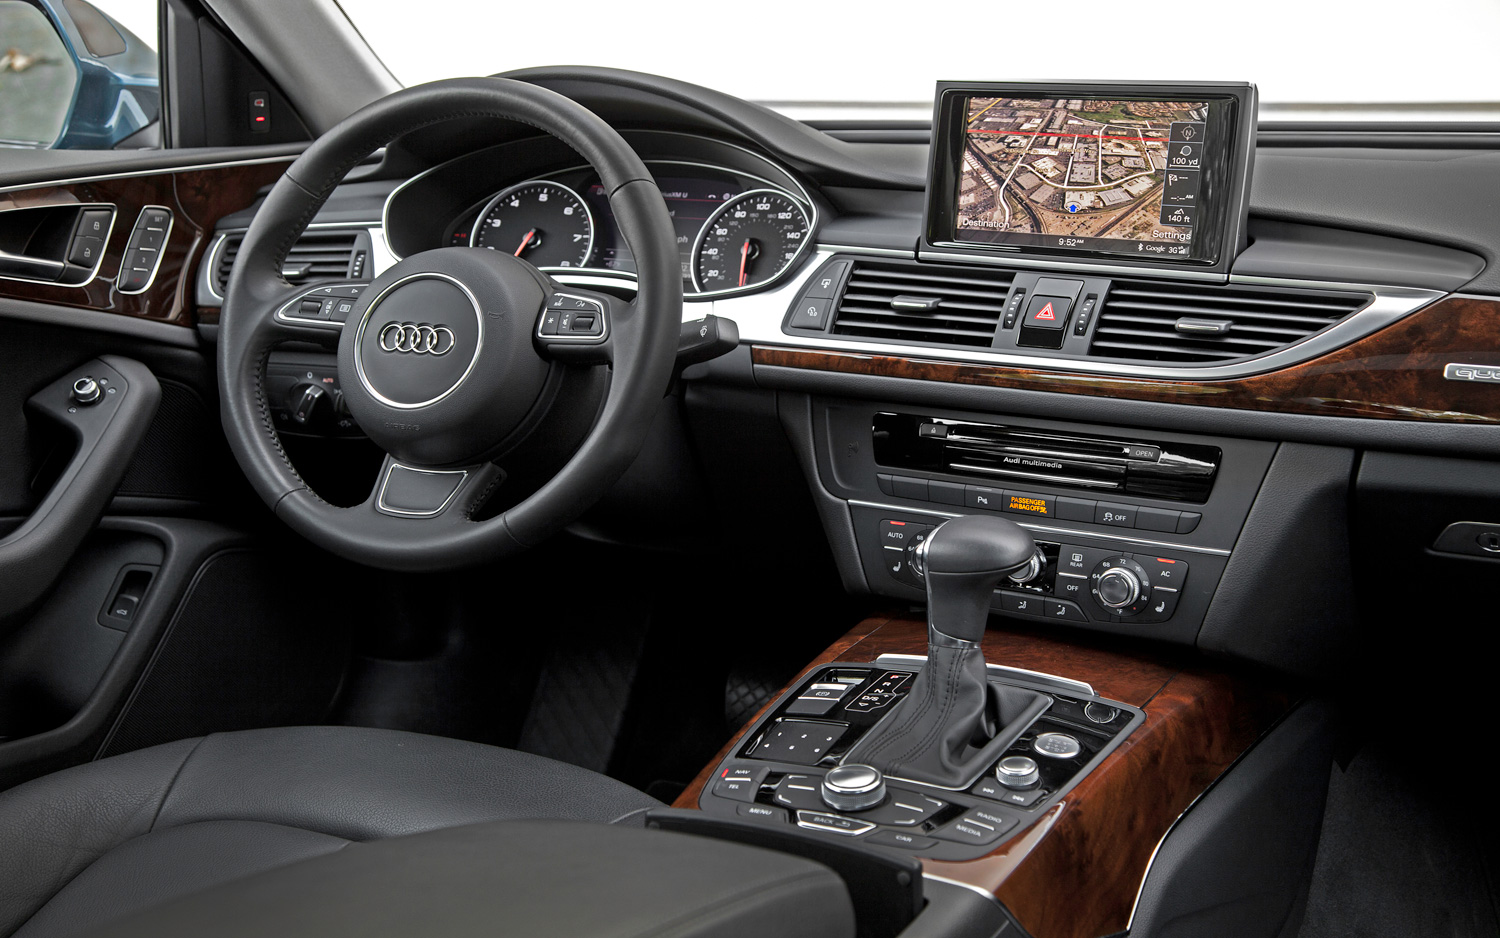 Foto Mobil Audi Q7 Terbaru Kawan Modifikasi